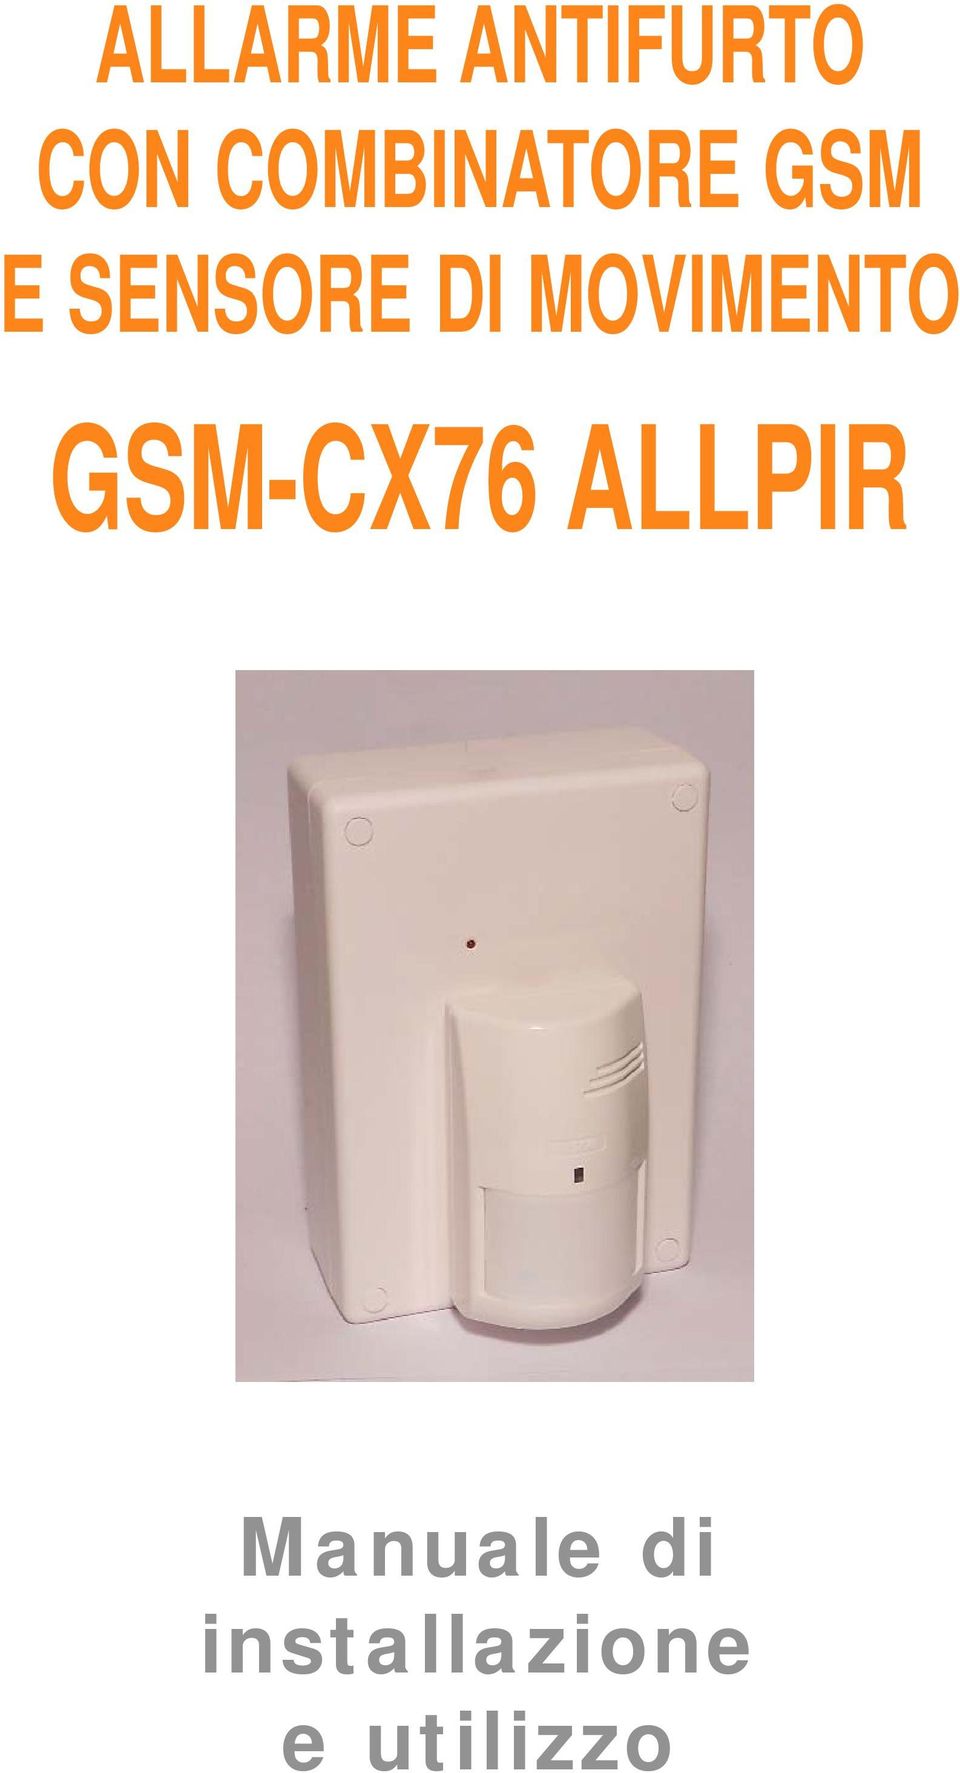 DI MOVIMENTO GSM-CX76